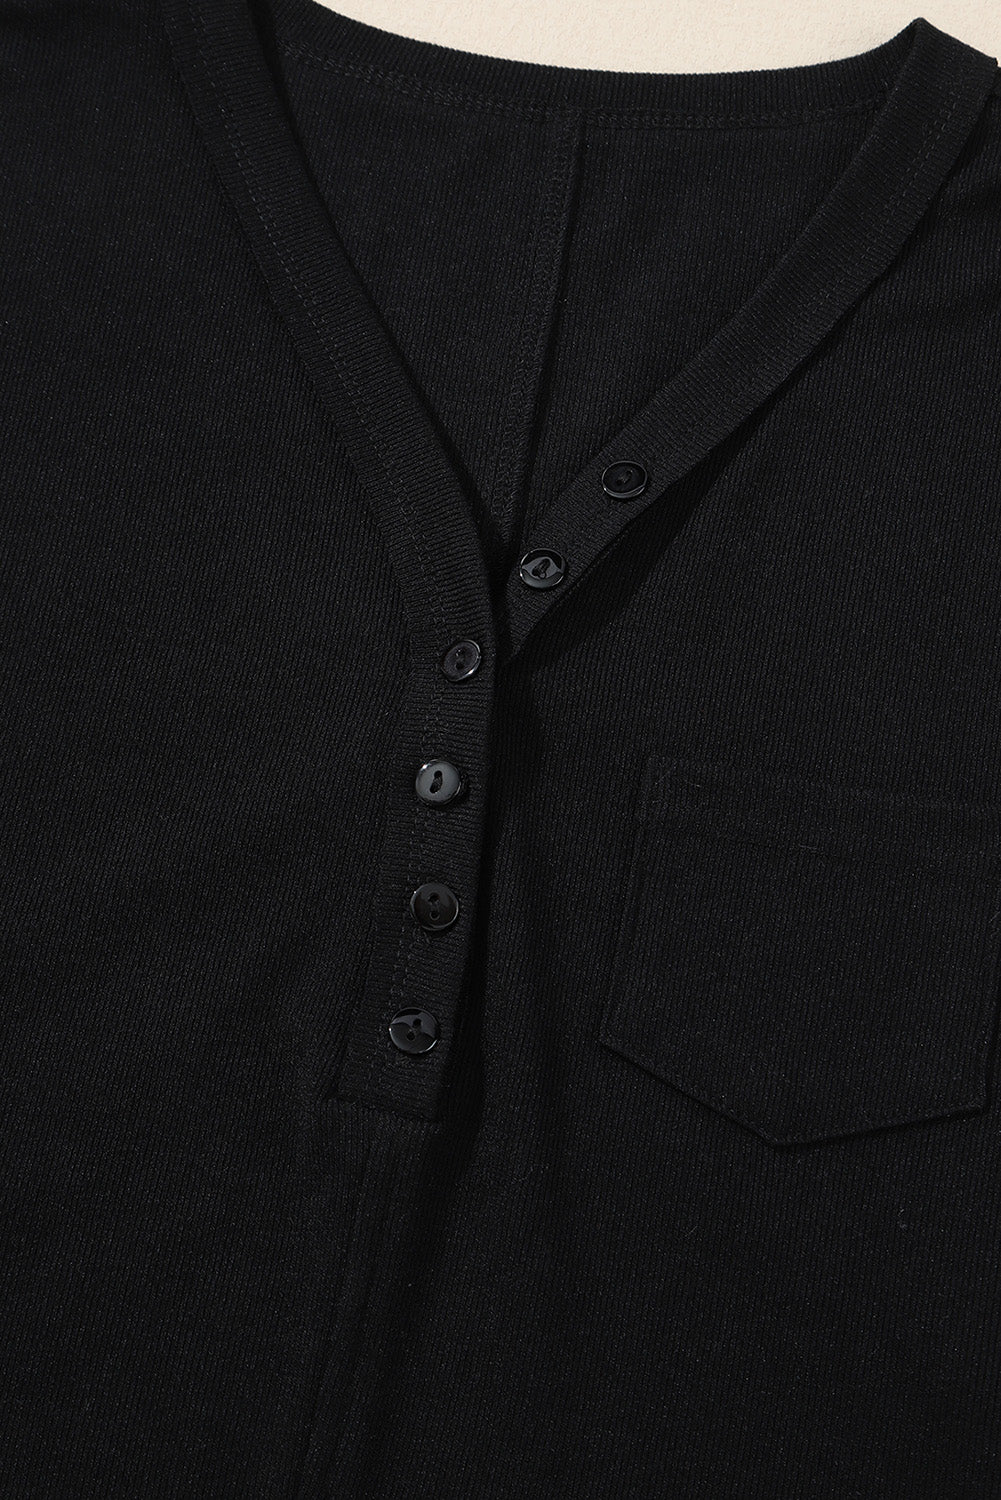 Schwarzes, geripptes Oberteil mit aufgesetzter Tasche und geteiltem Ausschnitt